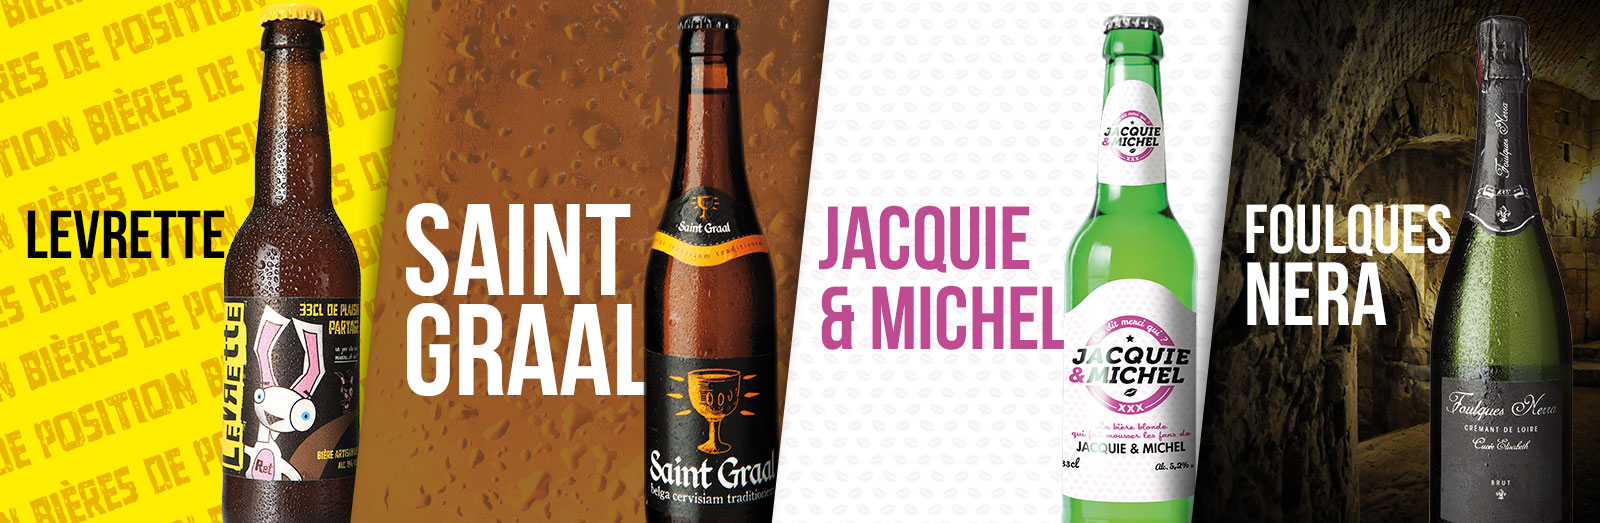 bières : Levrette, Saint Graal, Jacquie et Miche, Foulques Nera